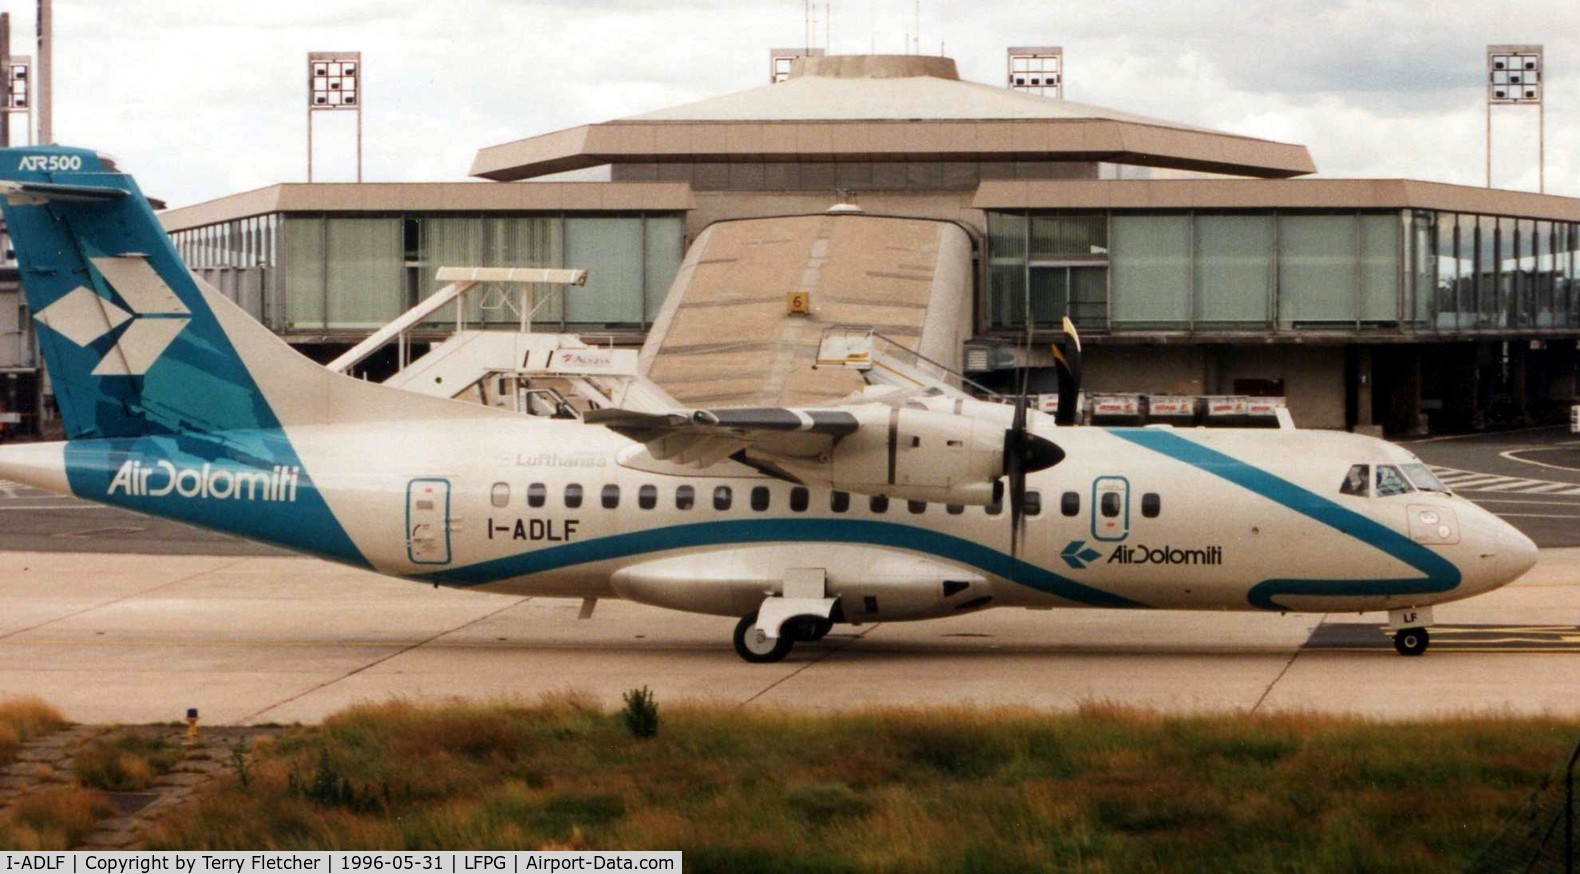 I-ADLF, 1995 ATR 42-500 C/N 462, Air Dolomiti's ATR42-500 c/n 462 taxying at Paris CDG